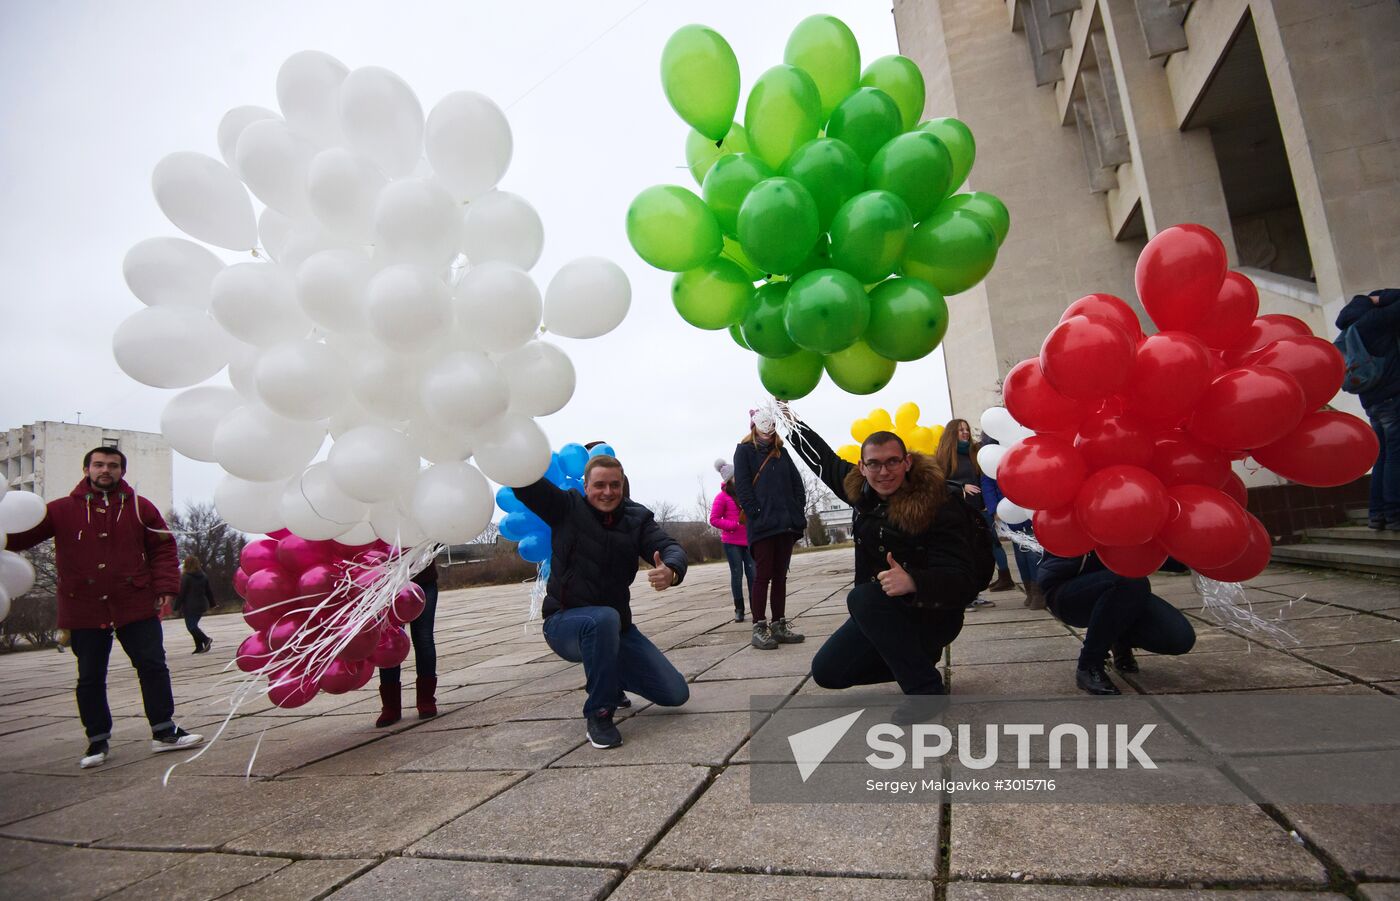 Student Day celebrated in Sevastopol